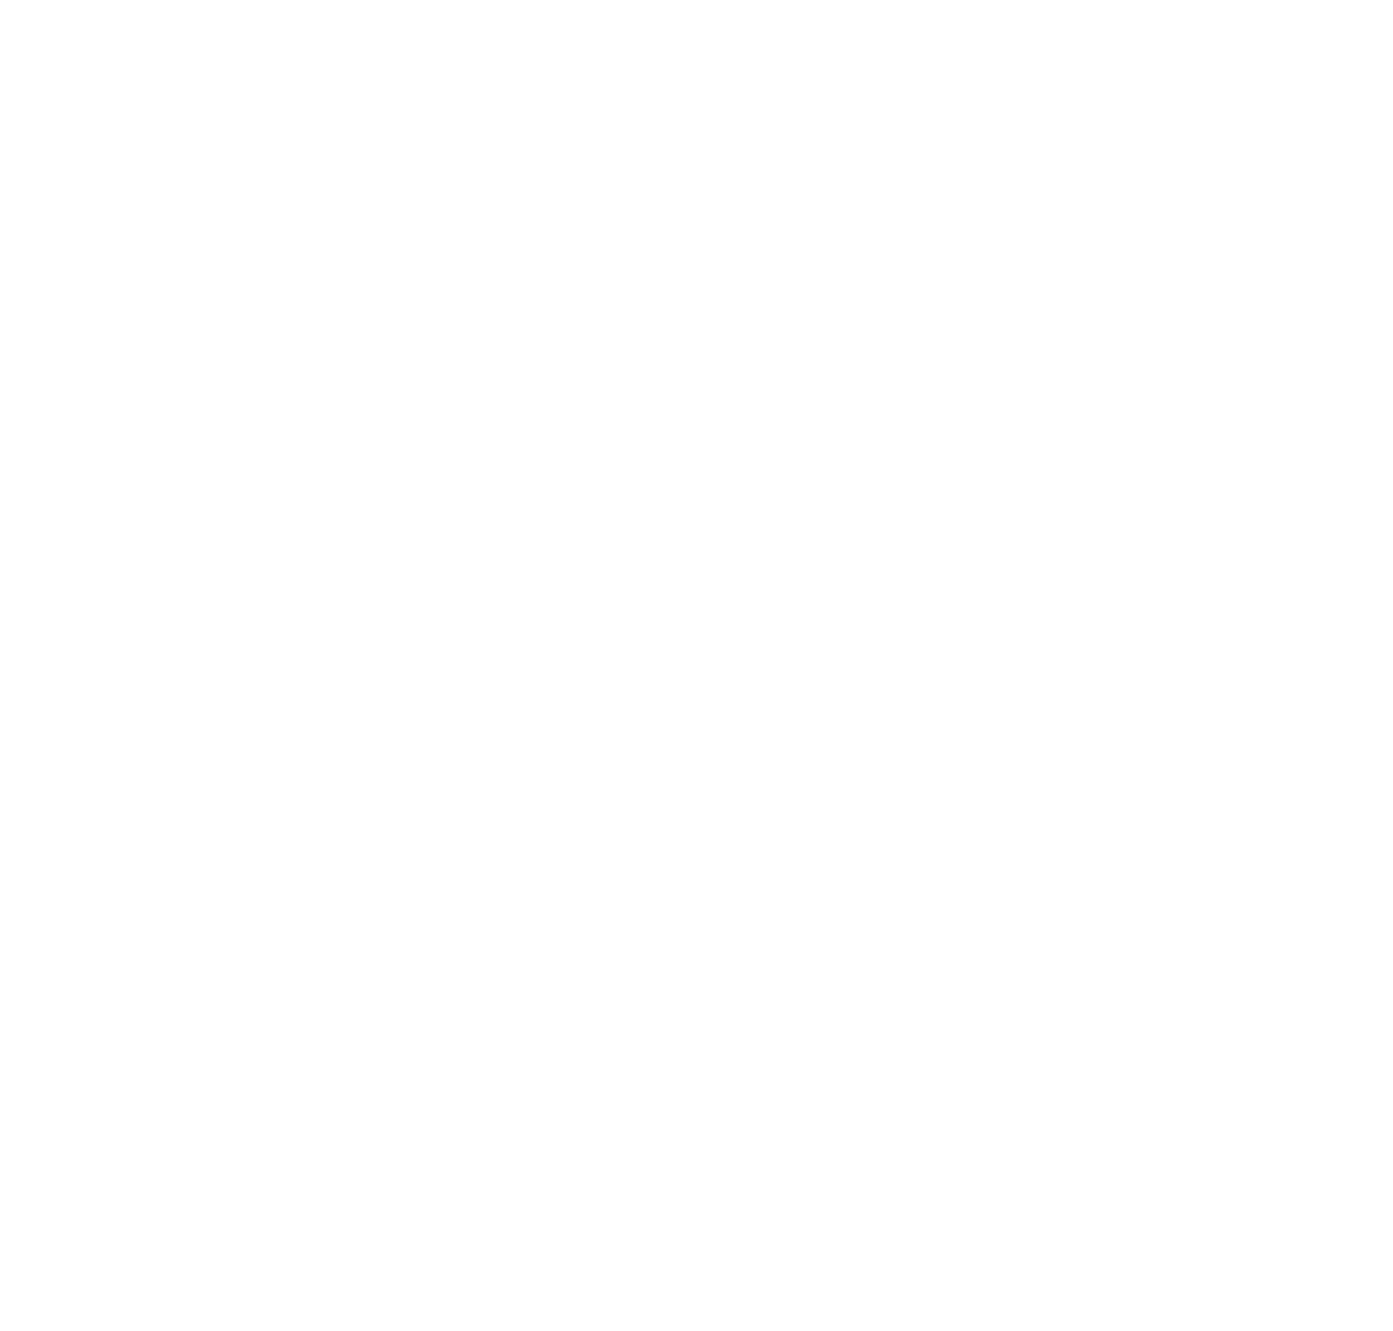 Greystar Fair Housing Policy